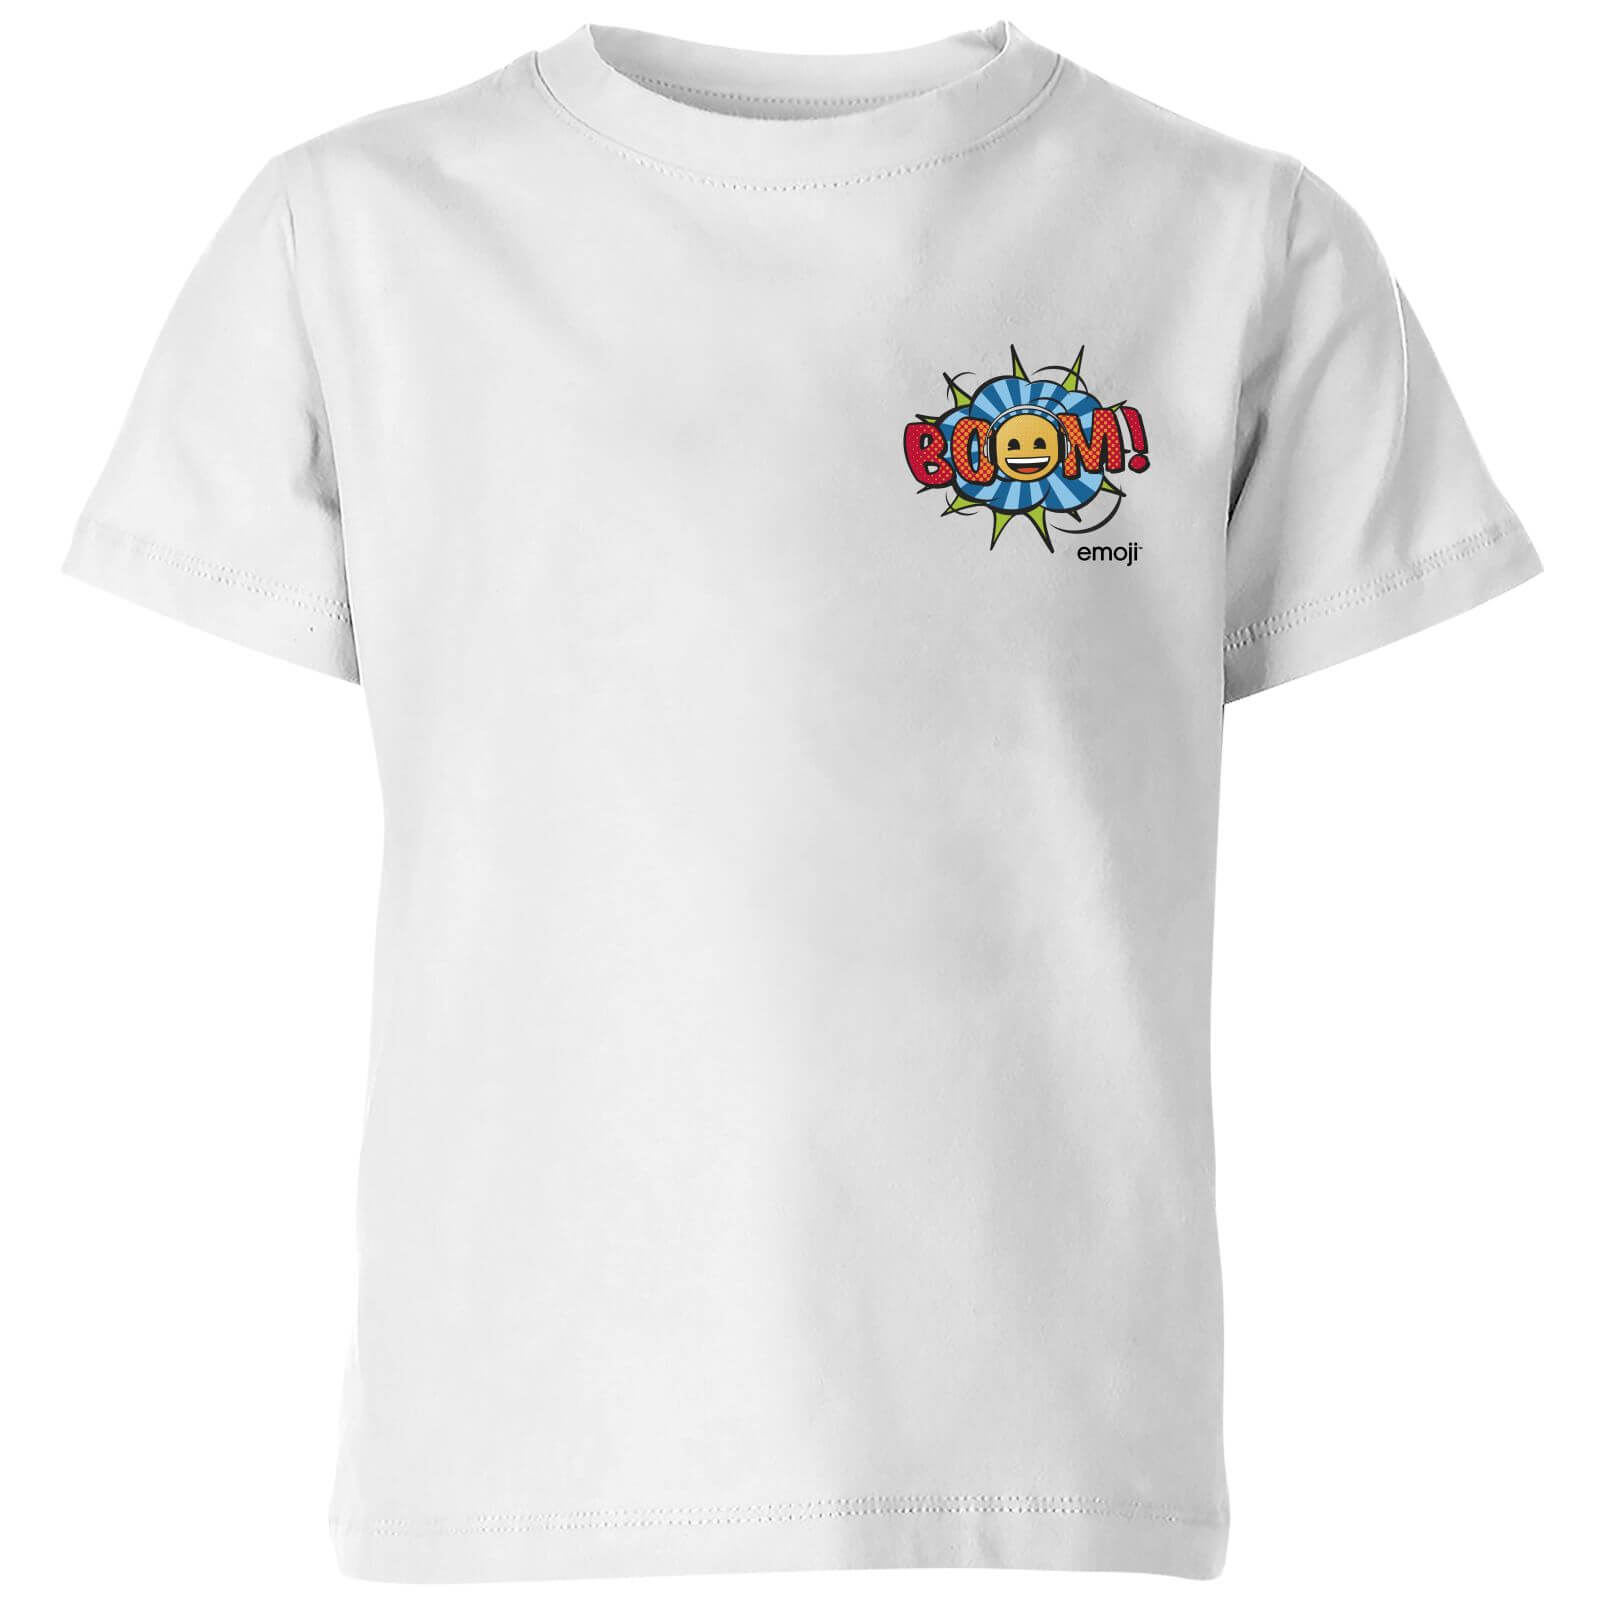 Emoji Boom Kids' T-Shirt - White - 3-4 Years - White